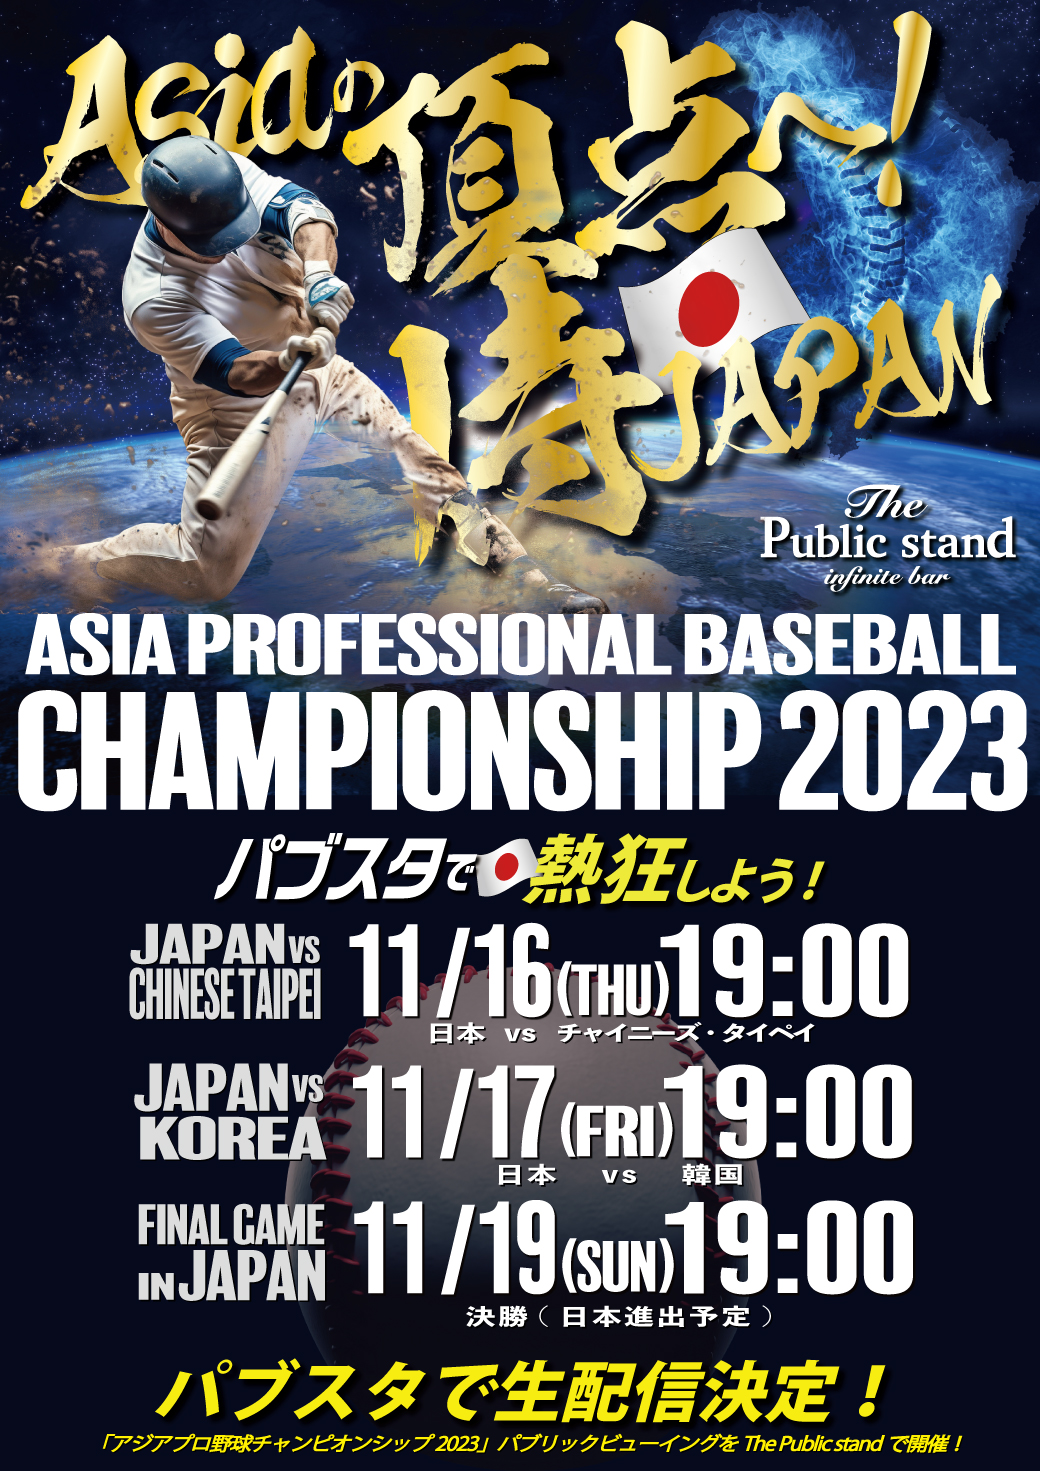 【アジアの頂点】カーネクスト アジアプロ野球チャンピオンシップ2023！BARパブリックスタンドで配信・予約スタート！